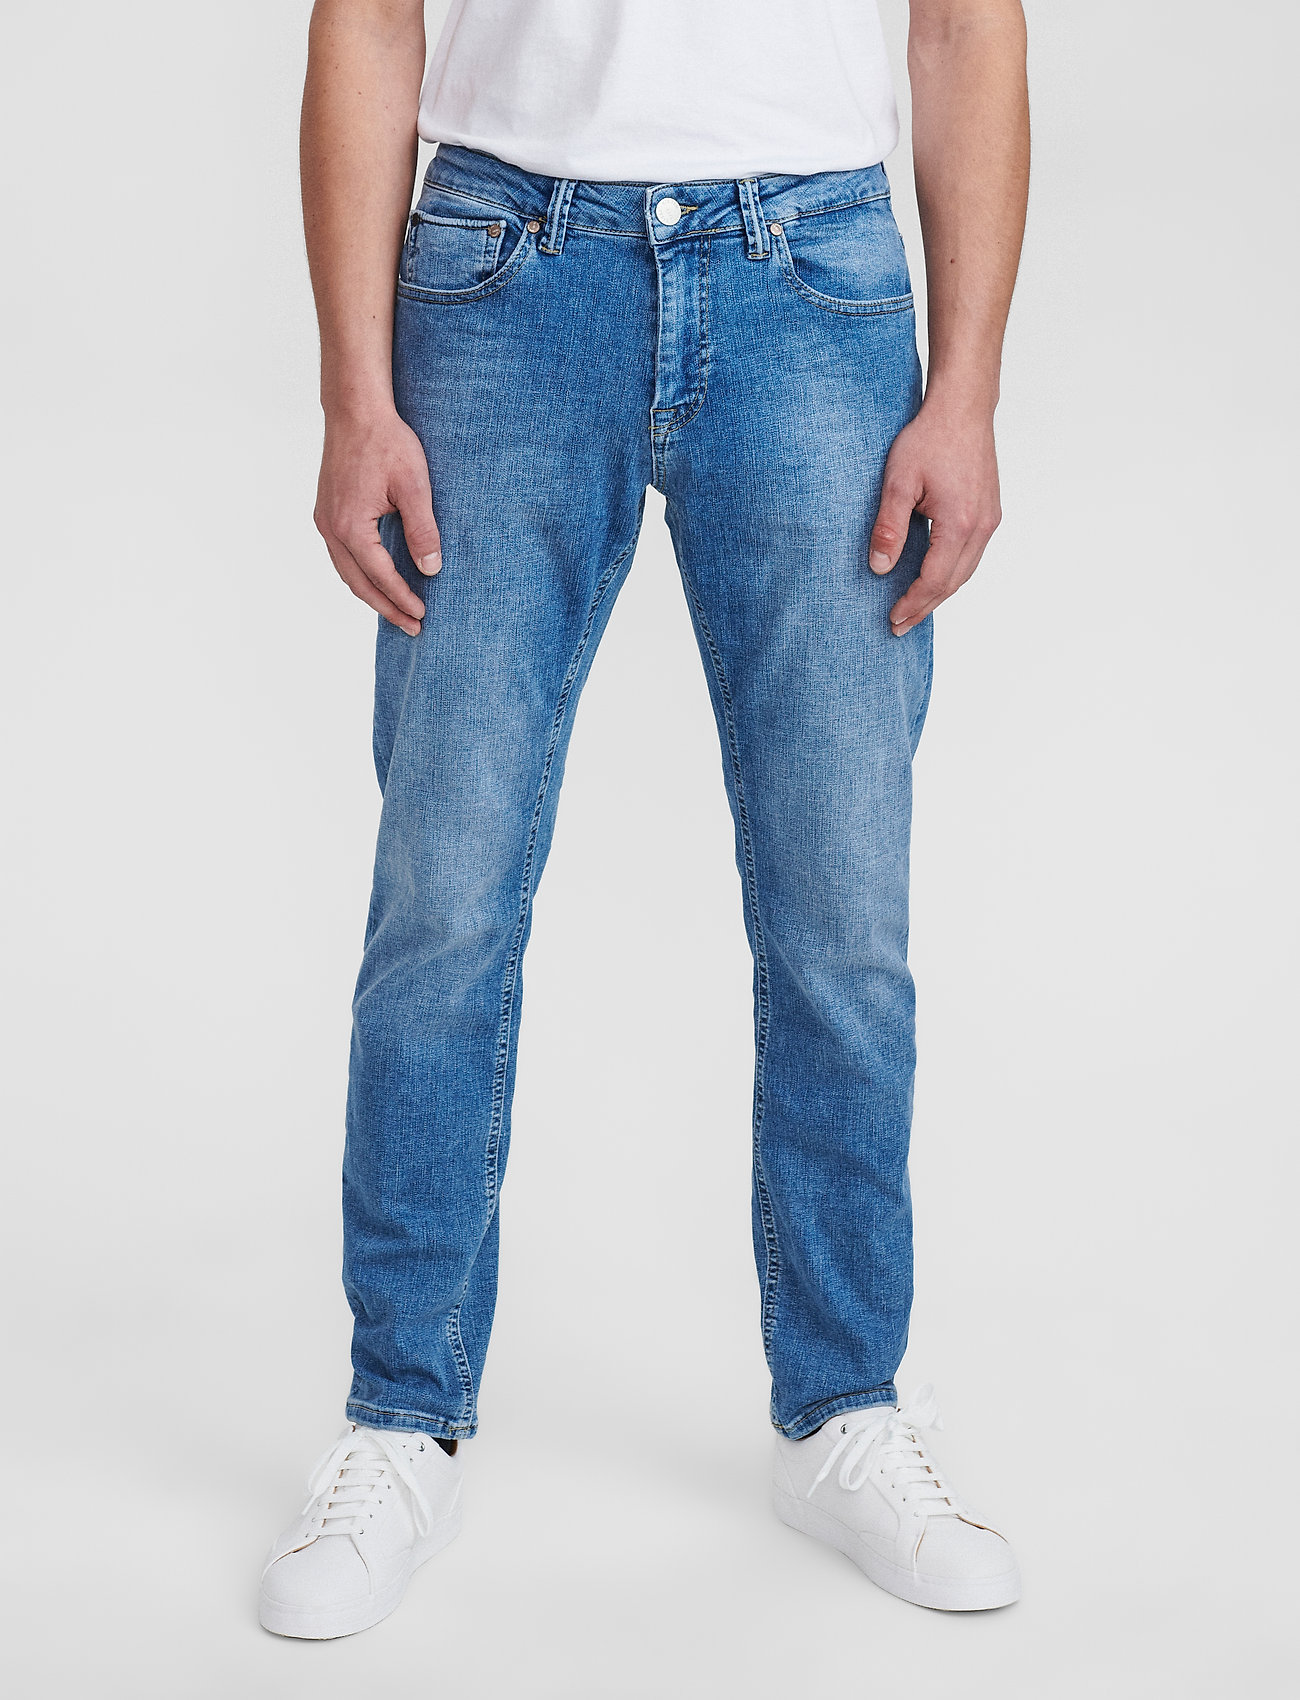 Den ultimative jeansguide til mænd